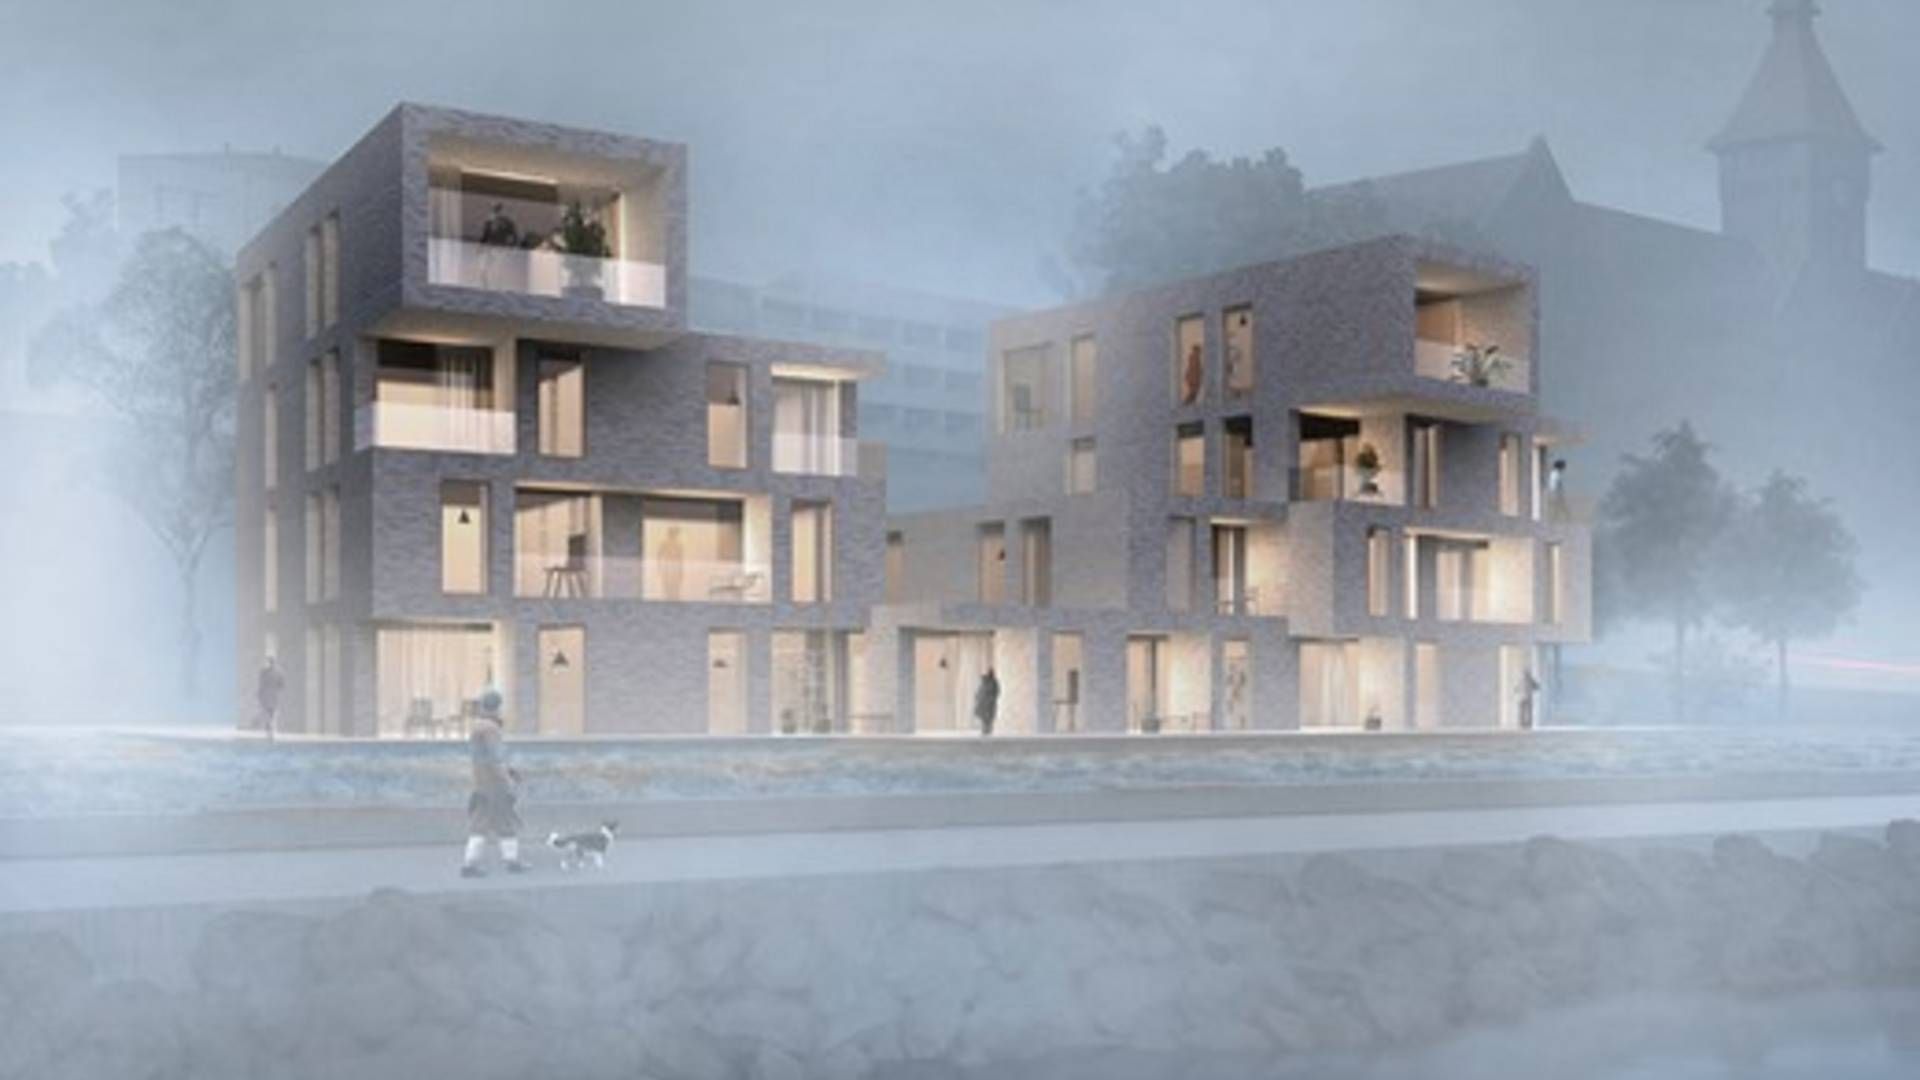 Illustration af Danfoss House som efter planen skal stå færdigt til næste år. | Foto: Danfoss